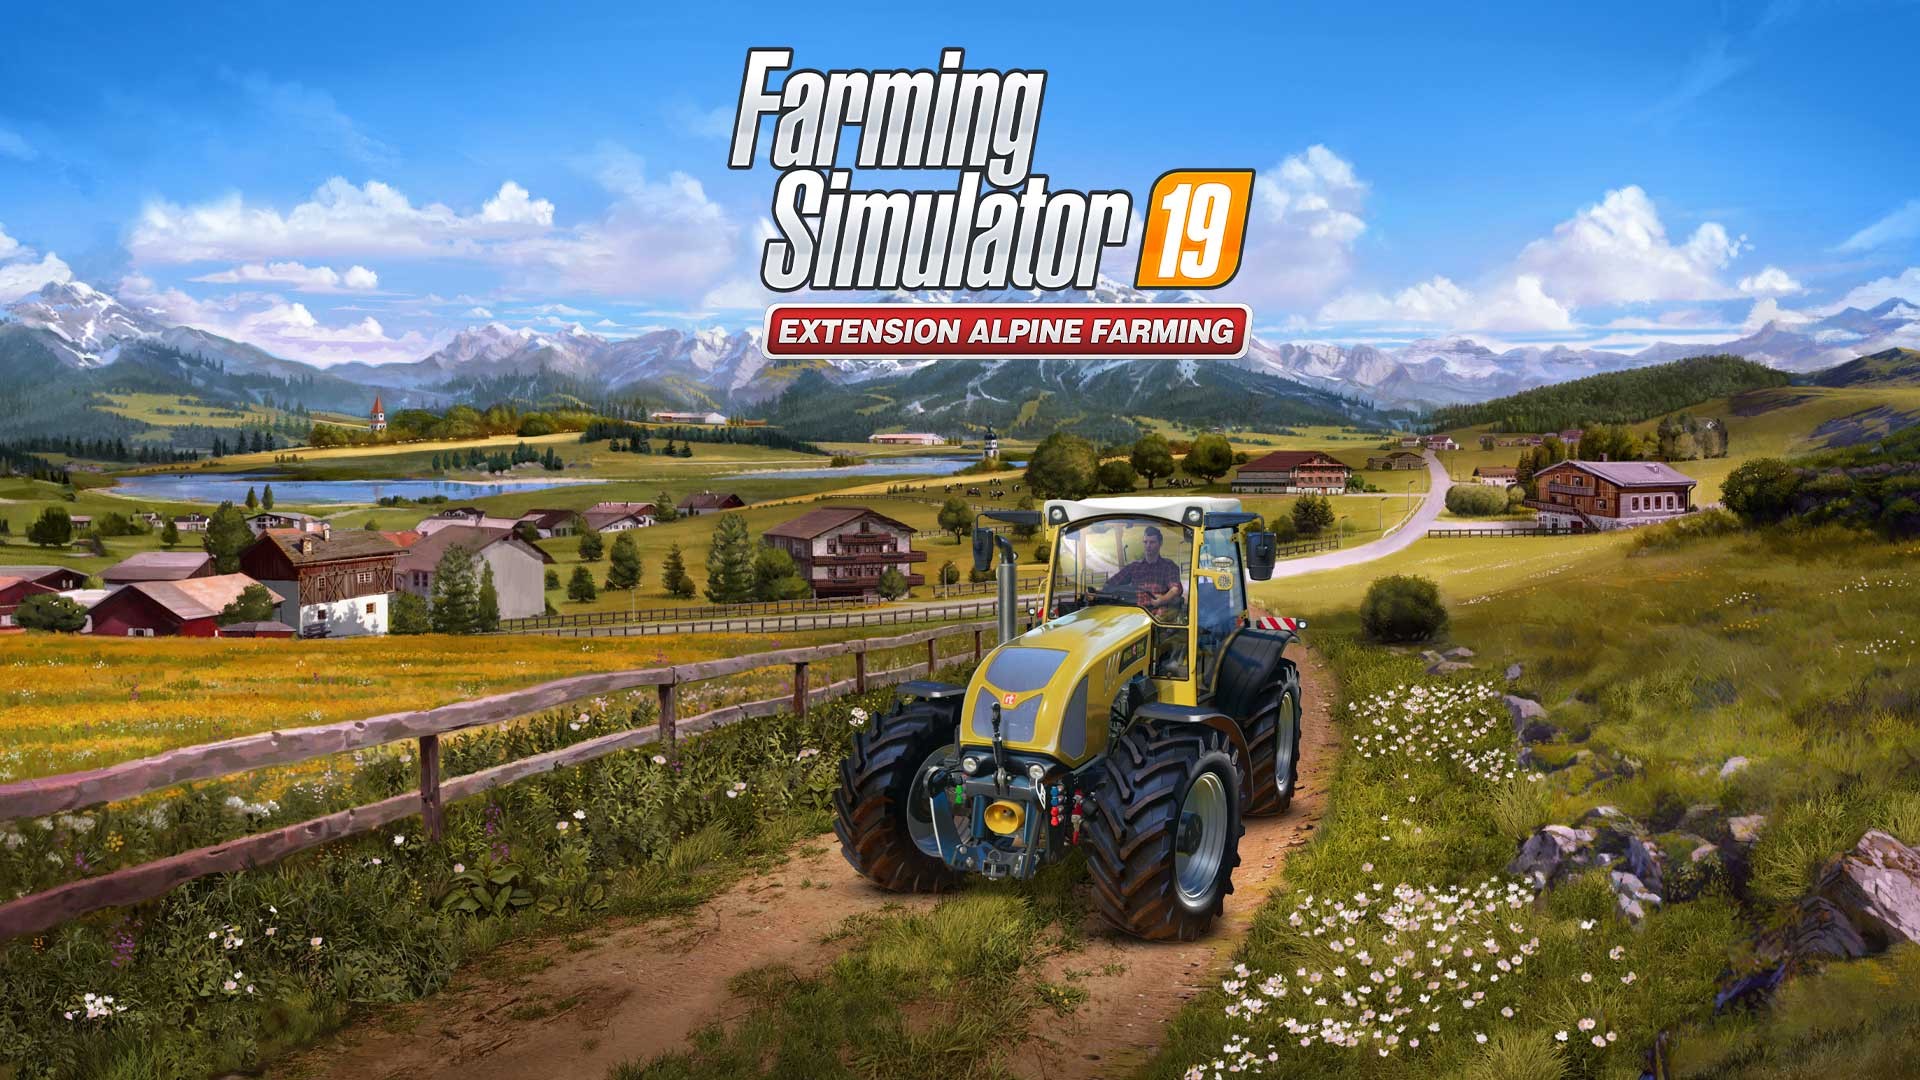 farming simulator 19 xbox one smyths